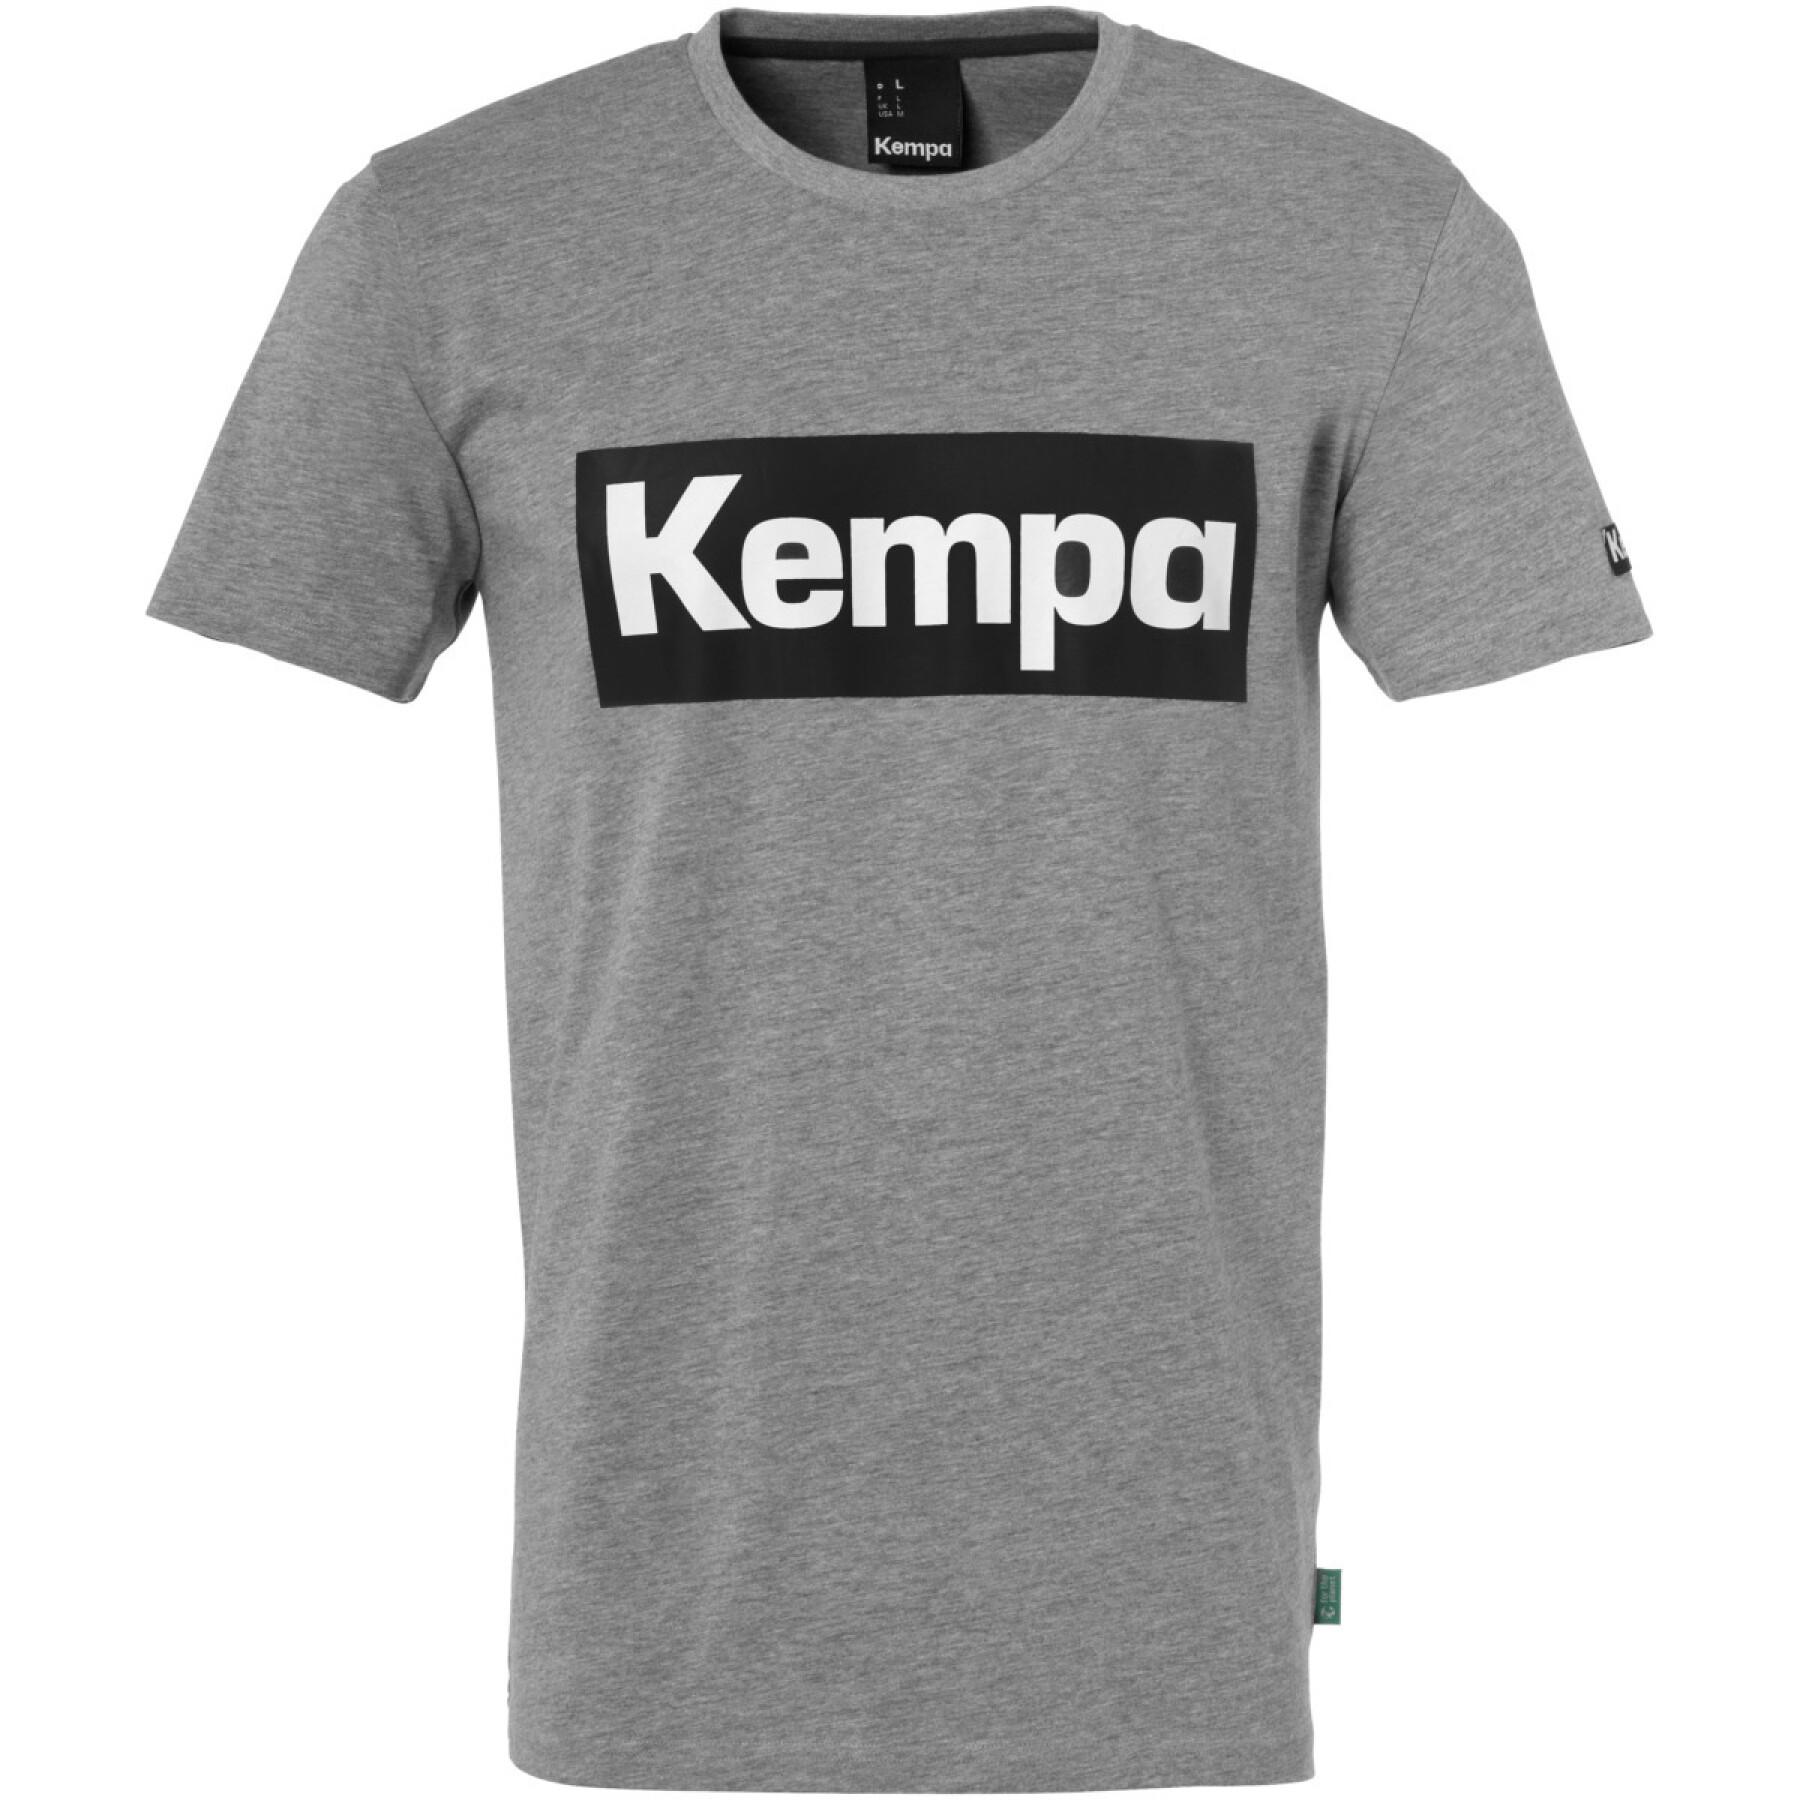 T-shirt de criança Kempa Promo